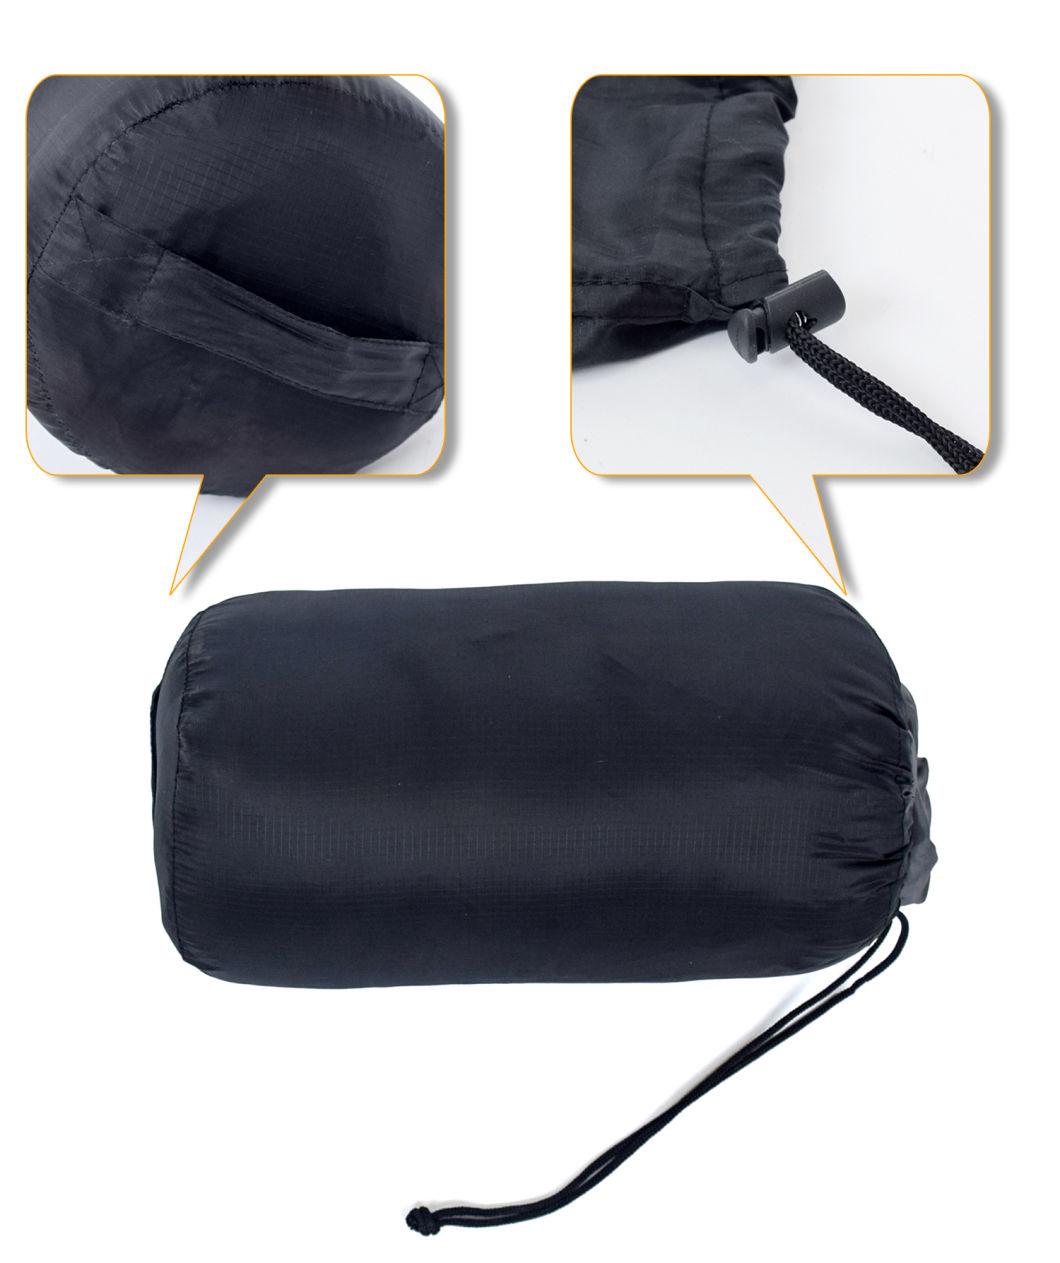 Manufacturer Hard-Wearing Waterproof Warm Polyester Pet Dog Sleeping Bed Bag